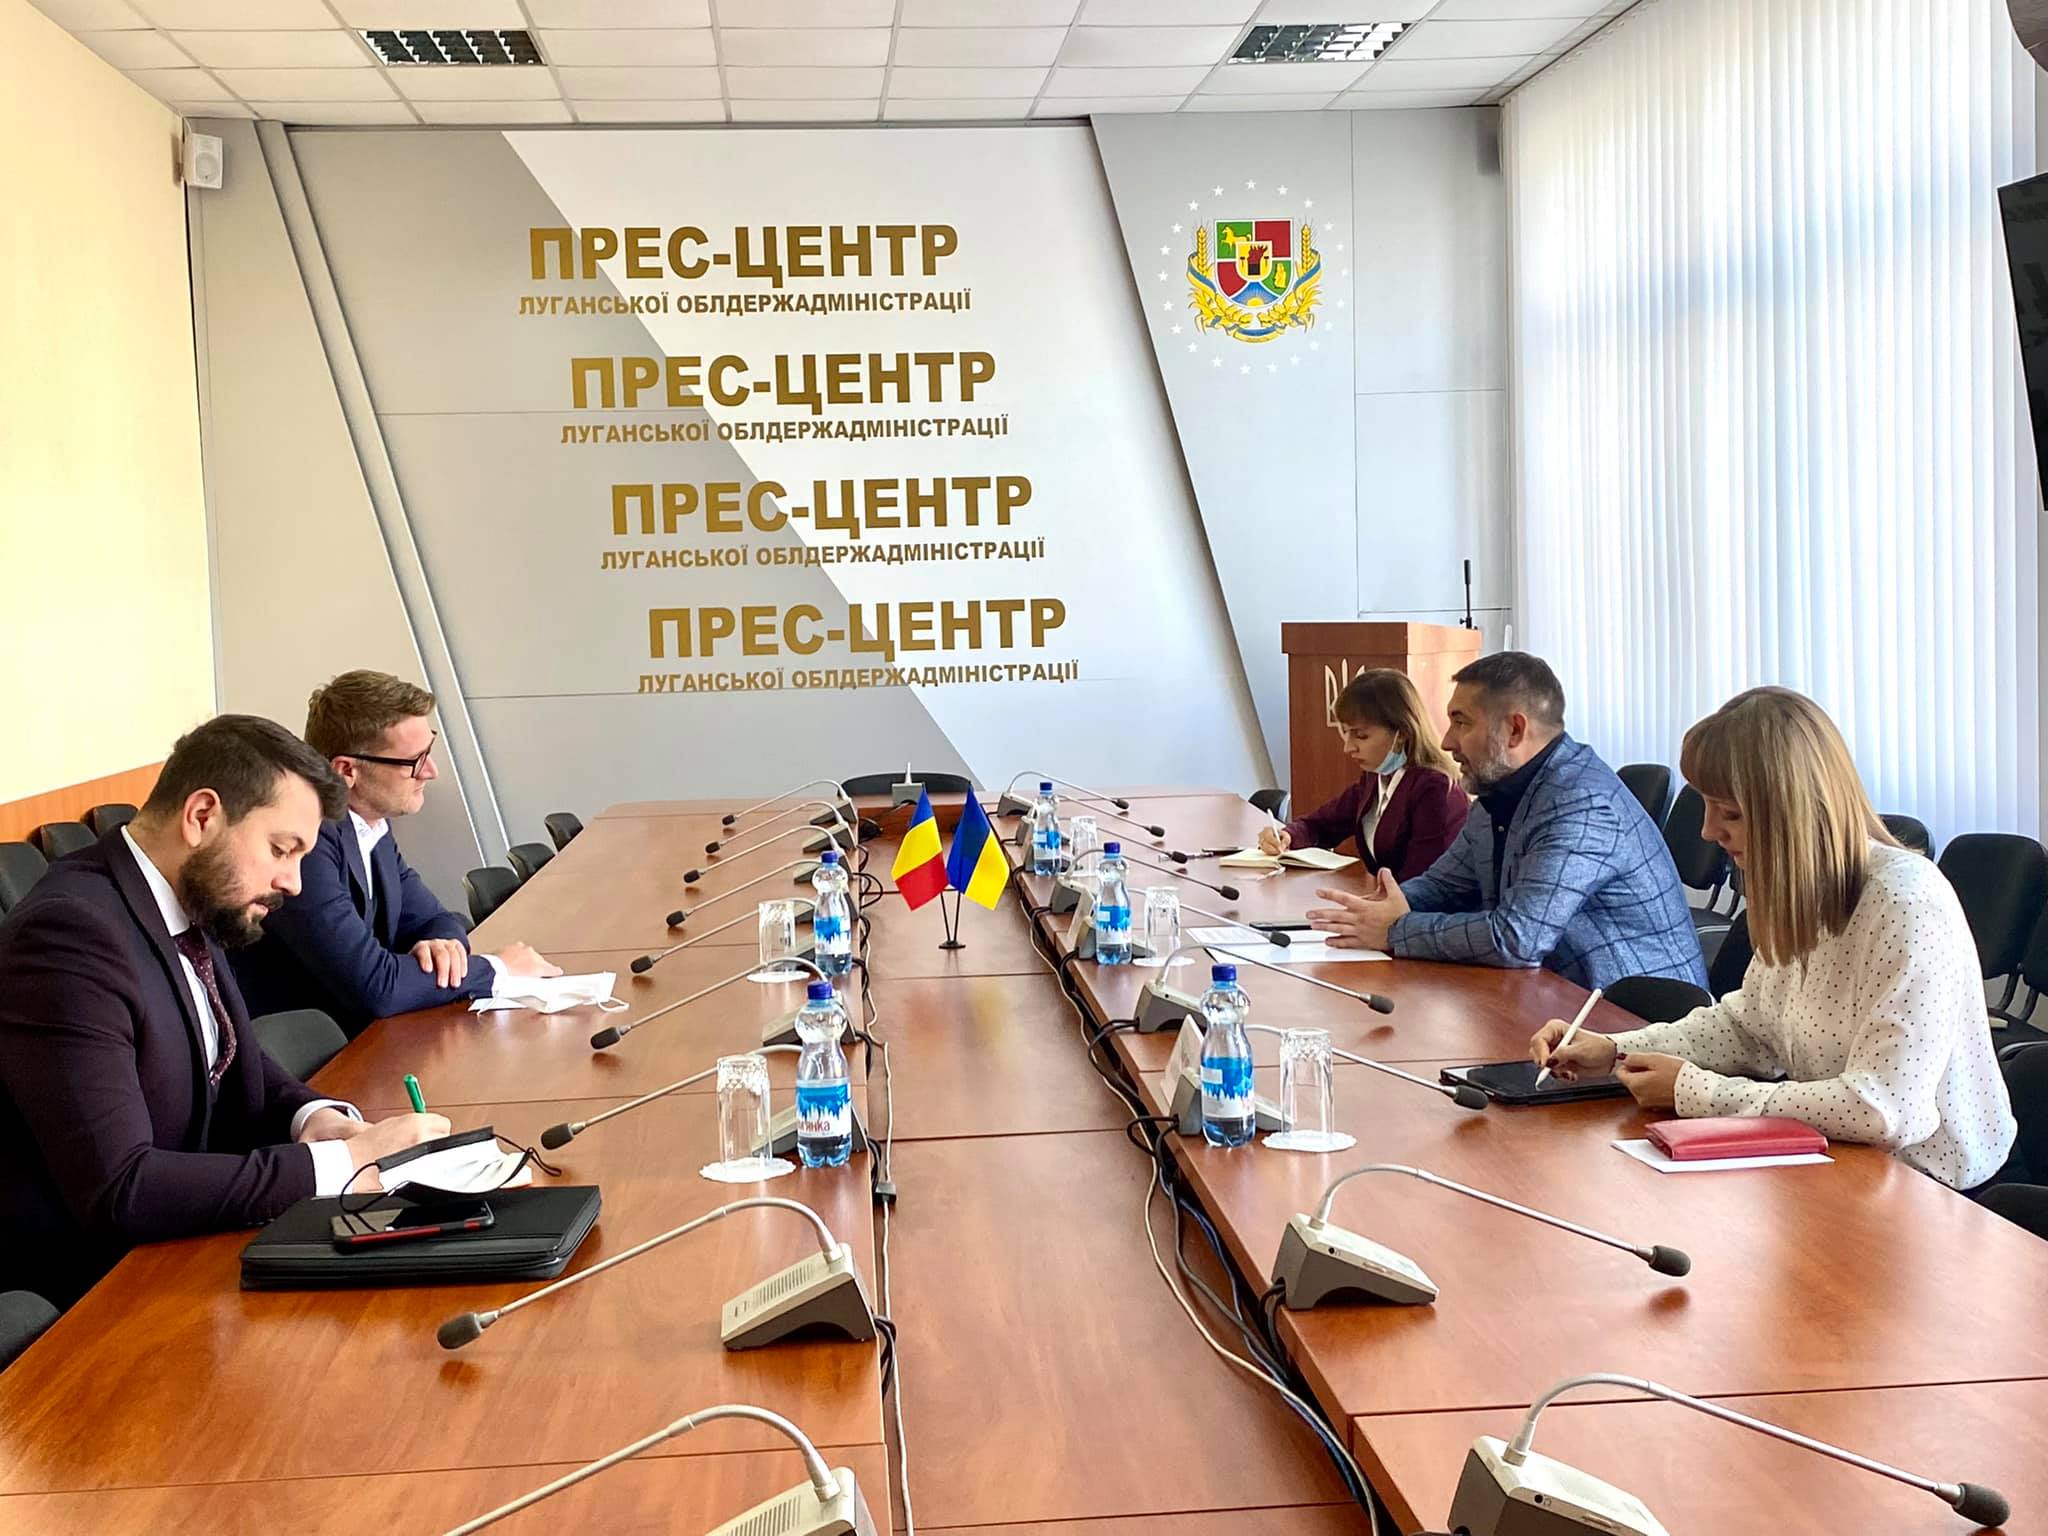 «Румунія продовжує підтримувати Україну, зокрема Луганщину, та планує реалізацію спільних проєктів», - наголосив Надзвичайний і Повноважний Посол Румунії в Україні Крістіан-Леон Цуркану